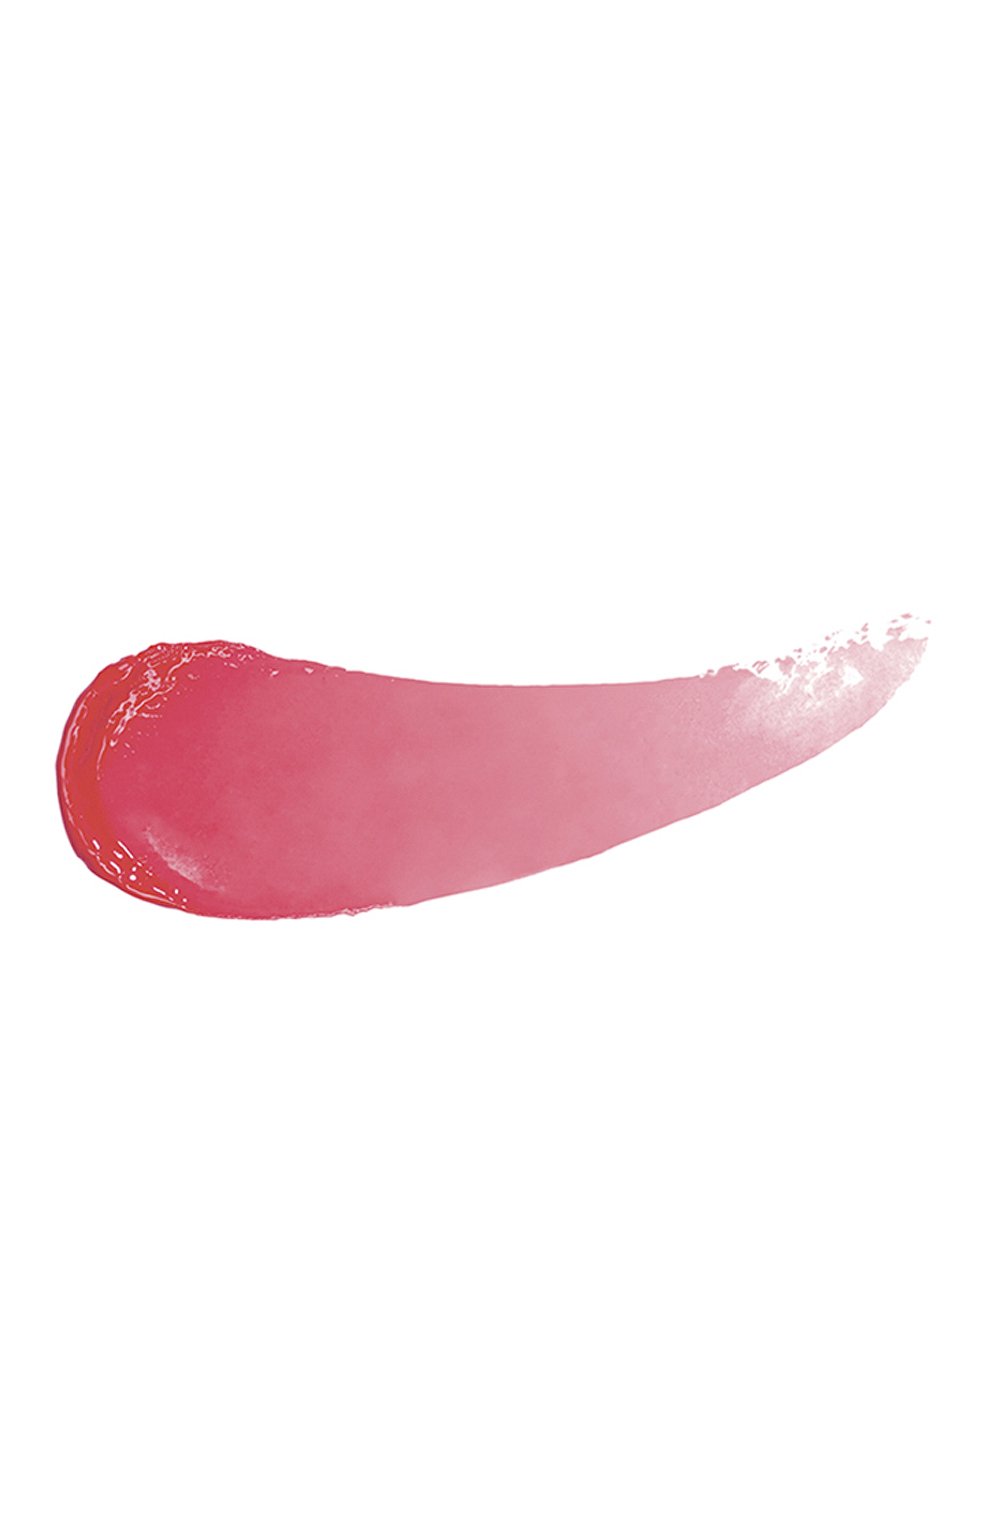 Сверкающая фитопомада, №23 кораллово-розовый (3g) SISLEY  цвета, арт. 170506 | Фото 2 (Финишное покрытие: Блестящий)